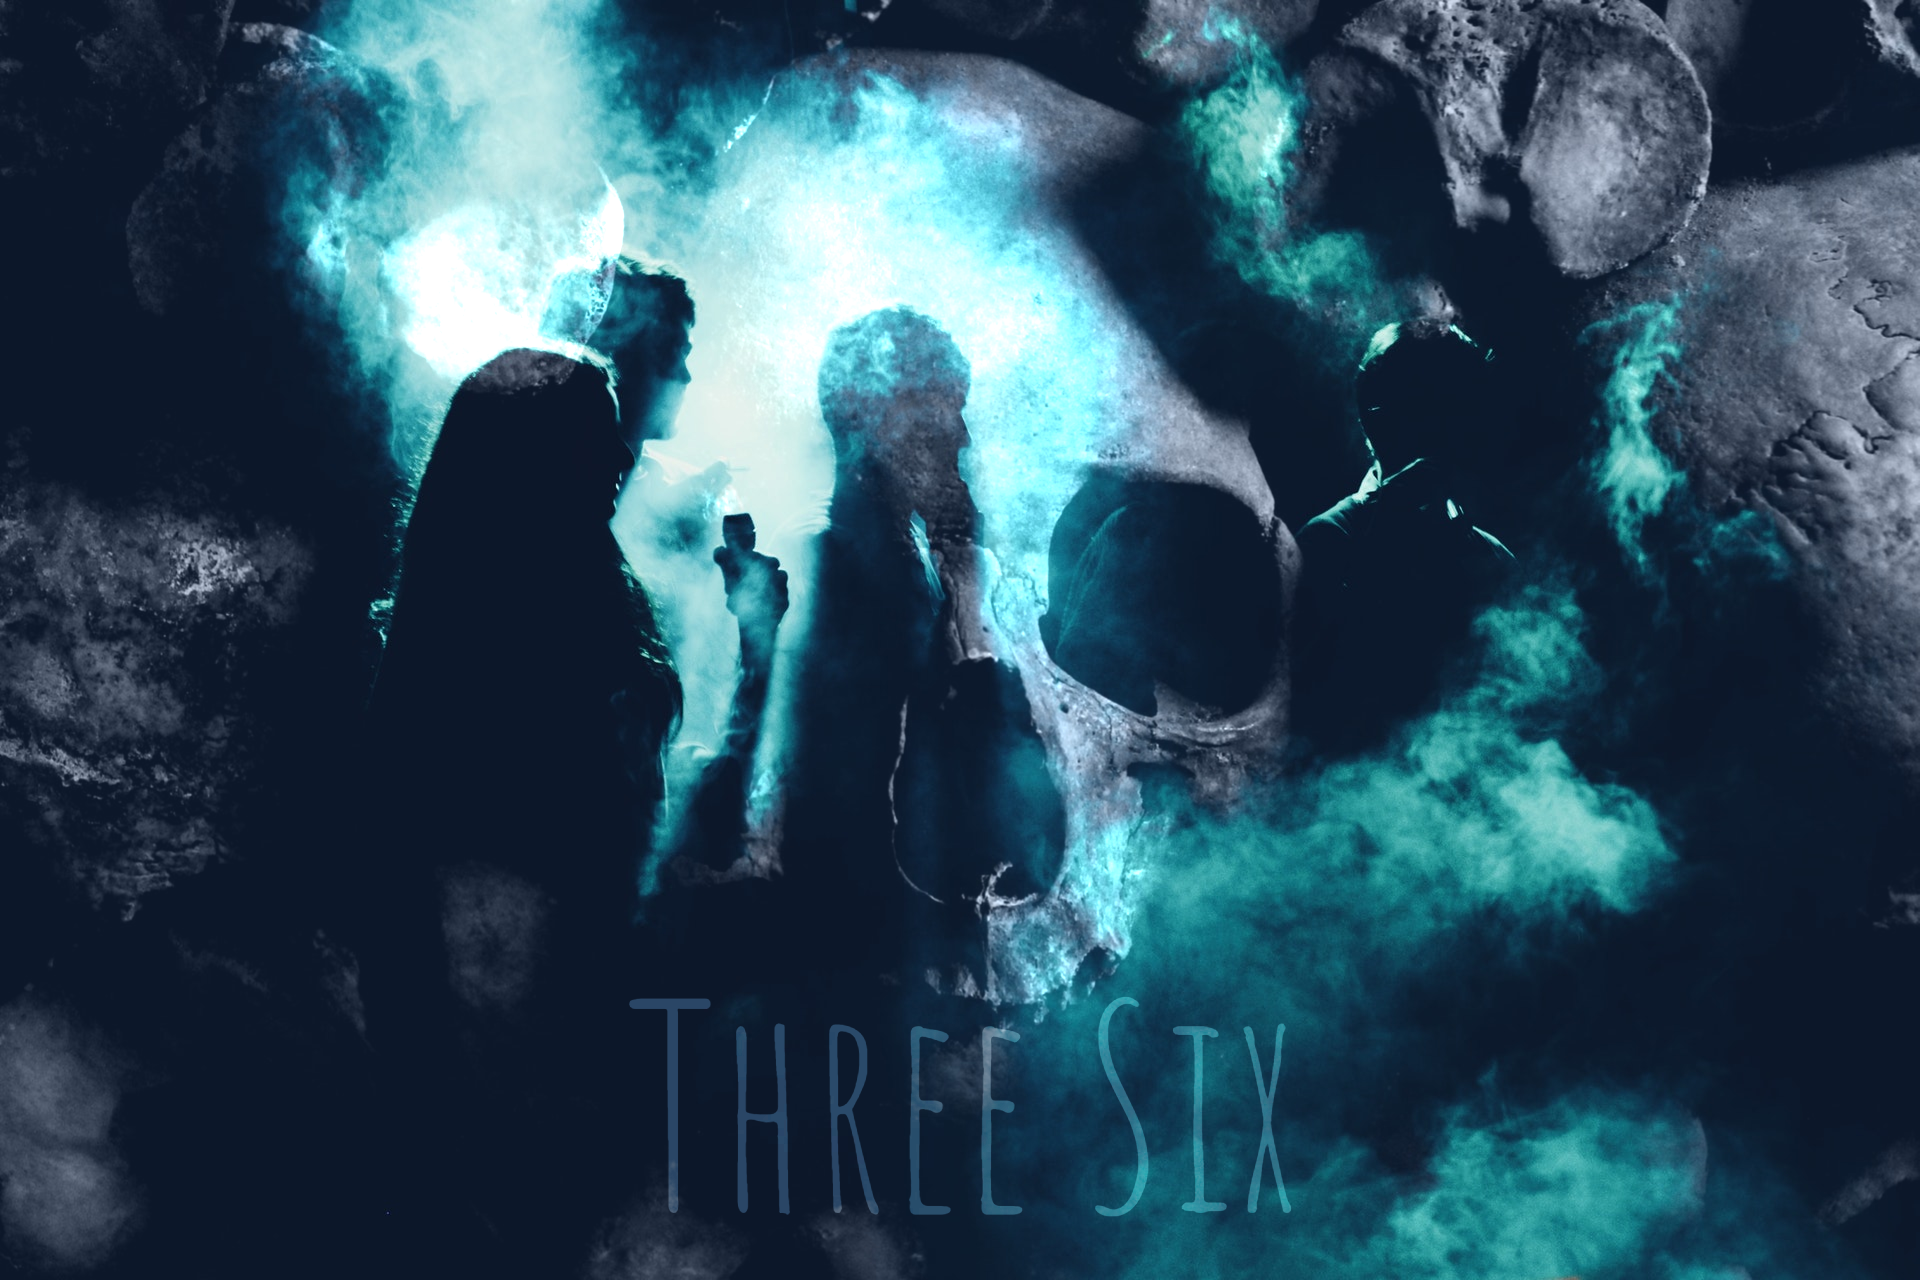 Three Six - Le dipendenze da droghe. Un cortometraggio musicale interpretato da ragazzi giovani per dare vita ad una nuova speranza.